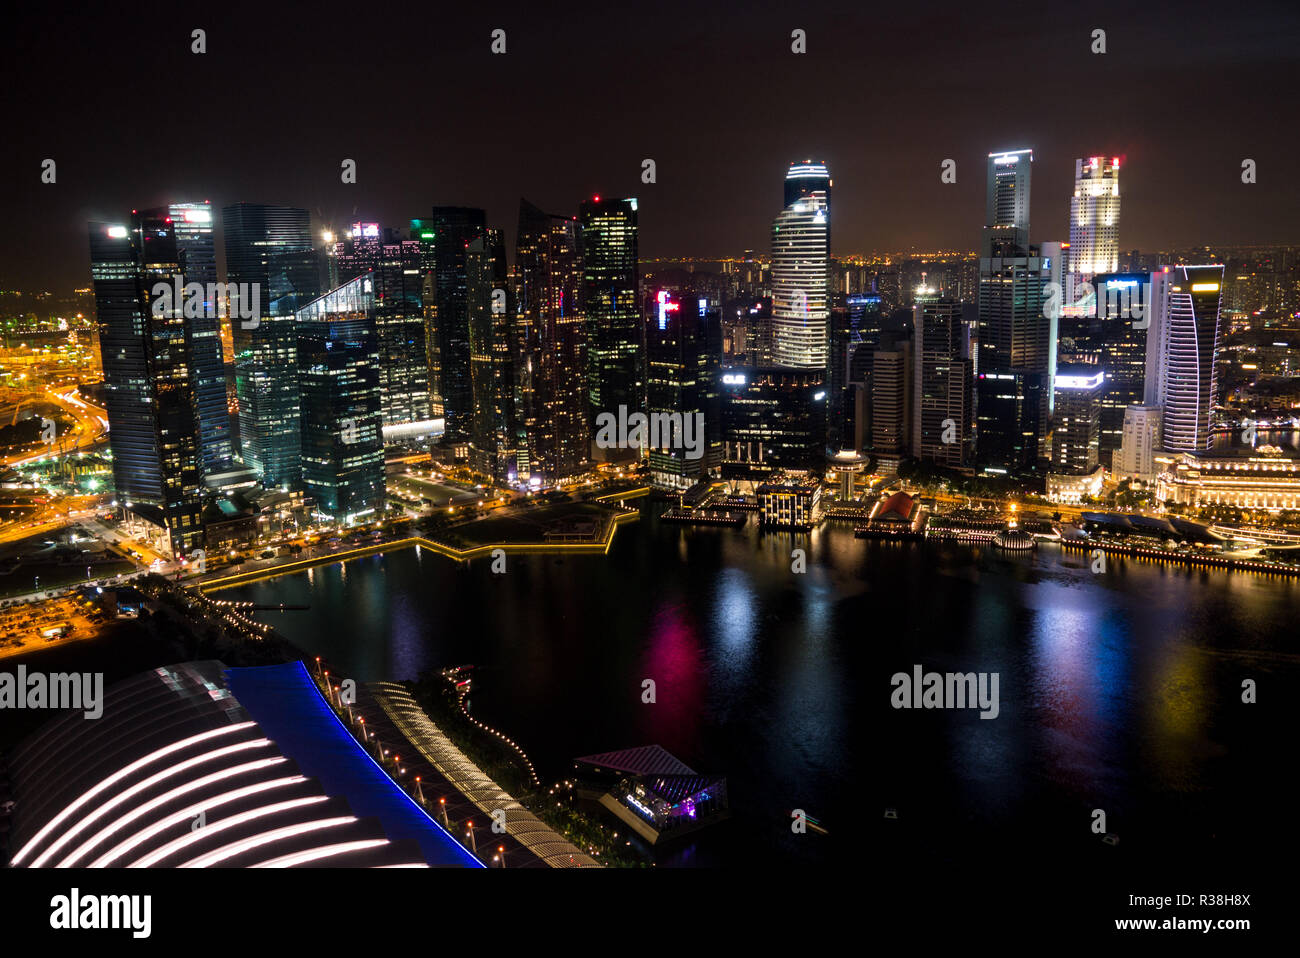 singapore skyline at night Stock Photo